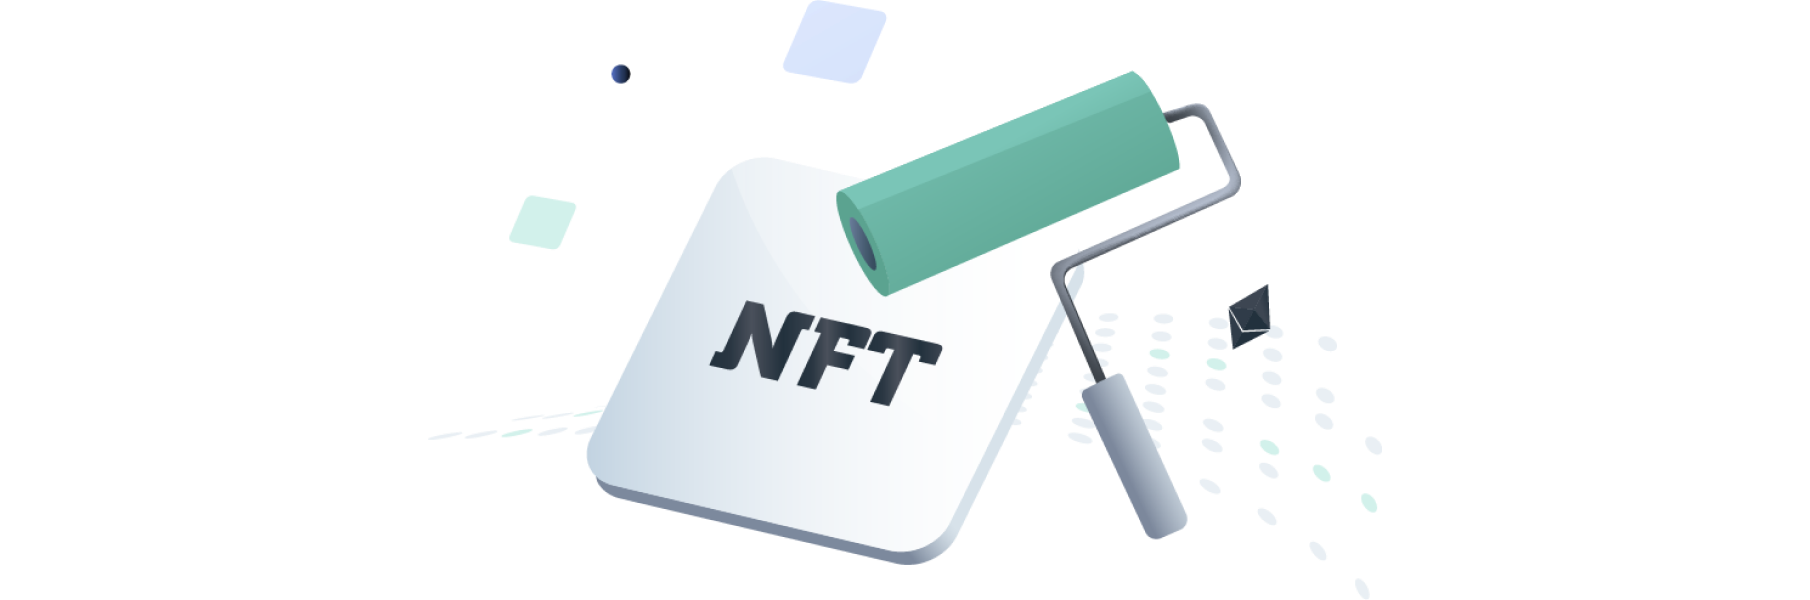 Comment créer un NFT application ?